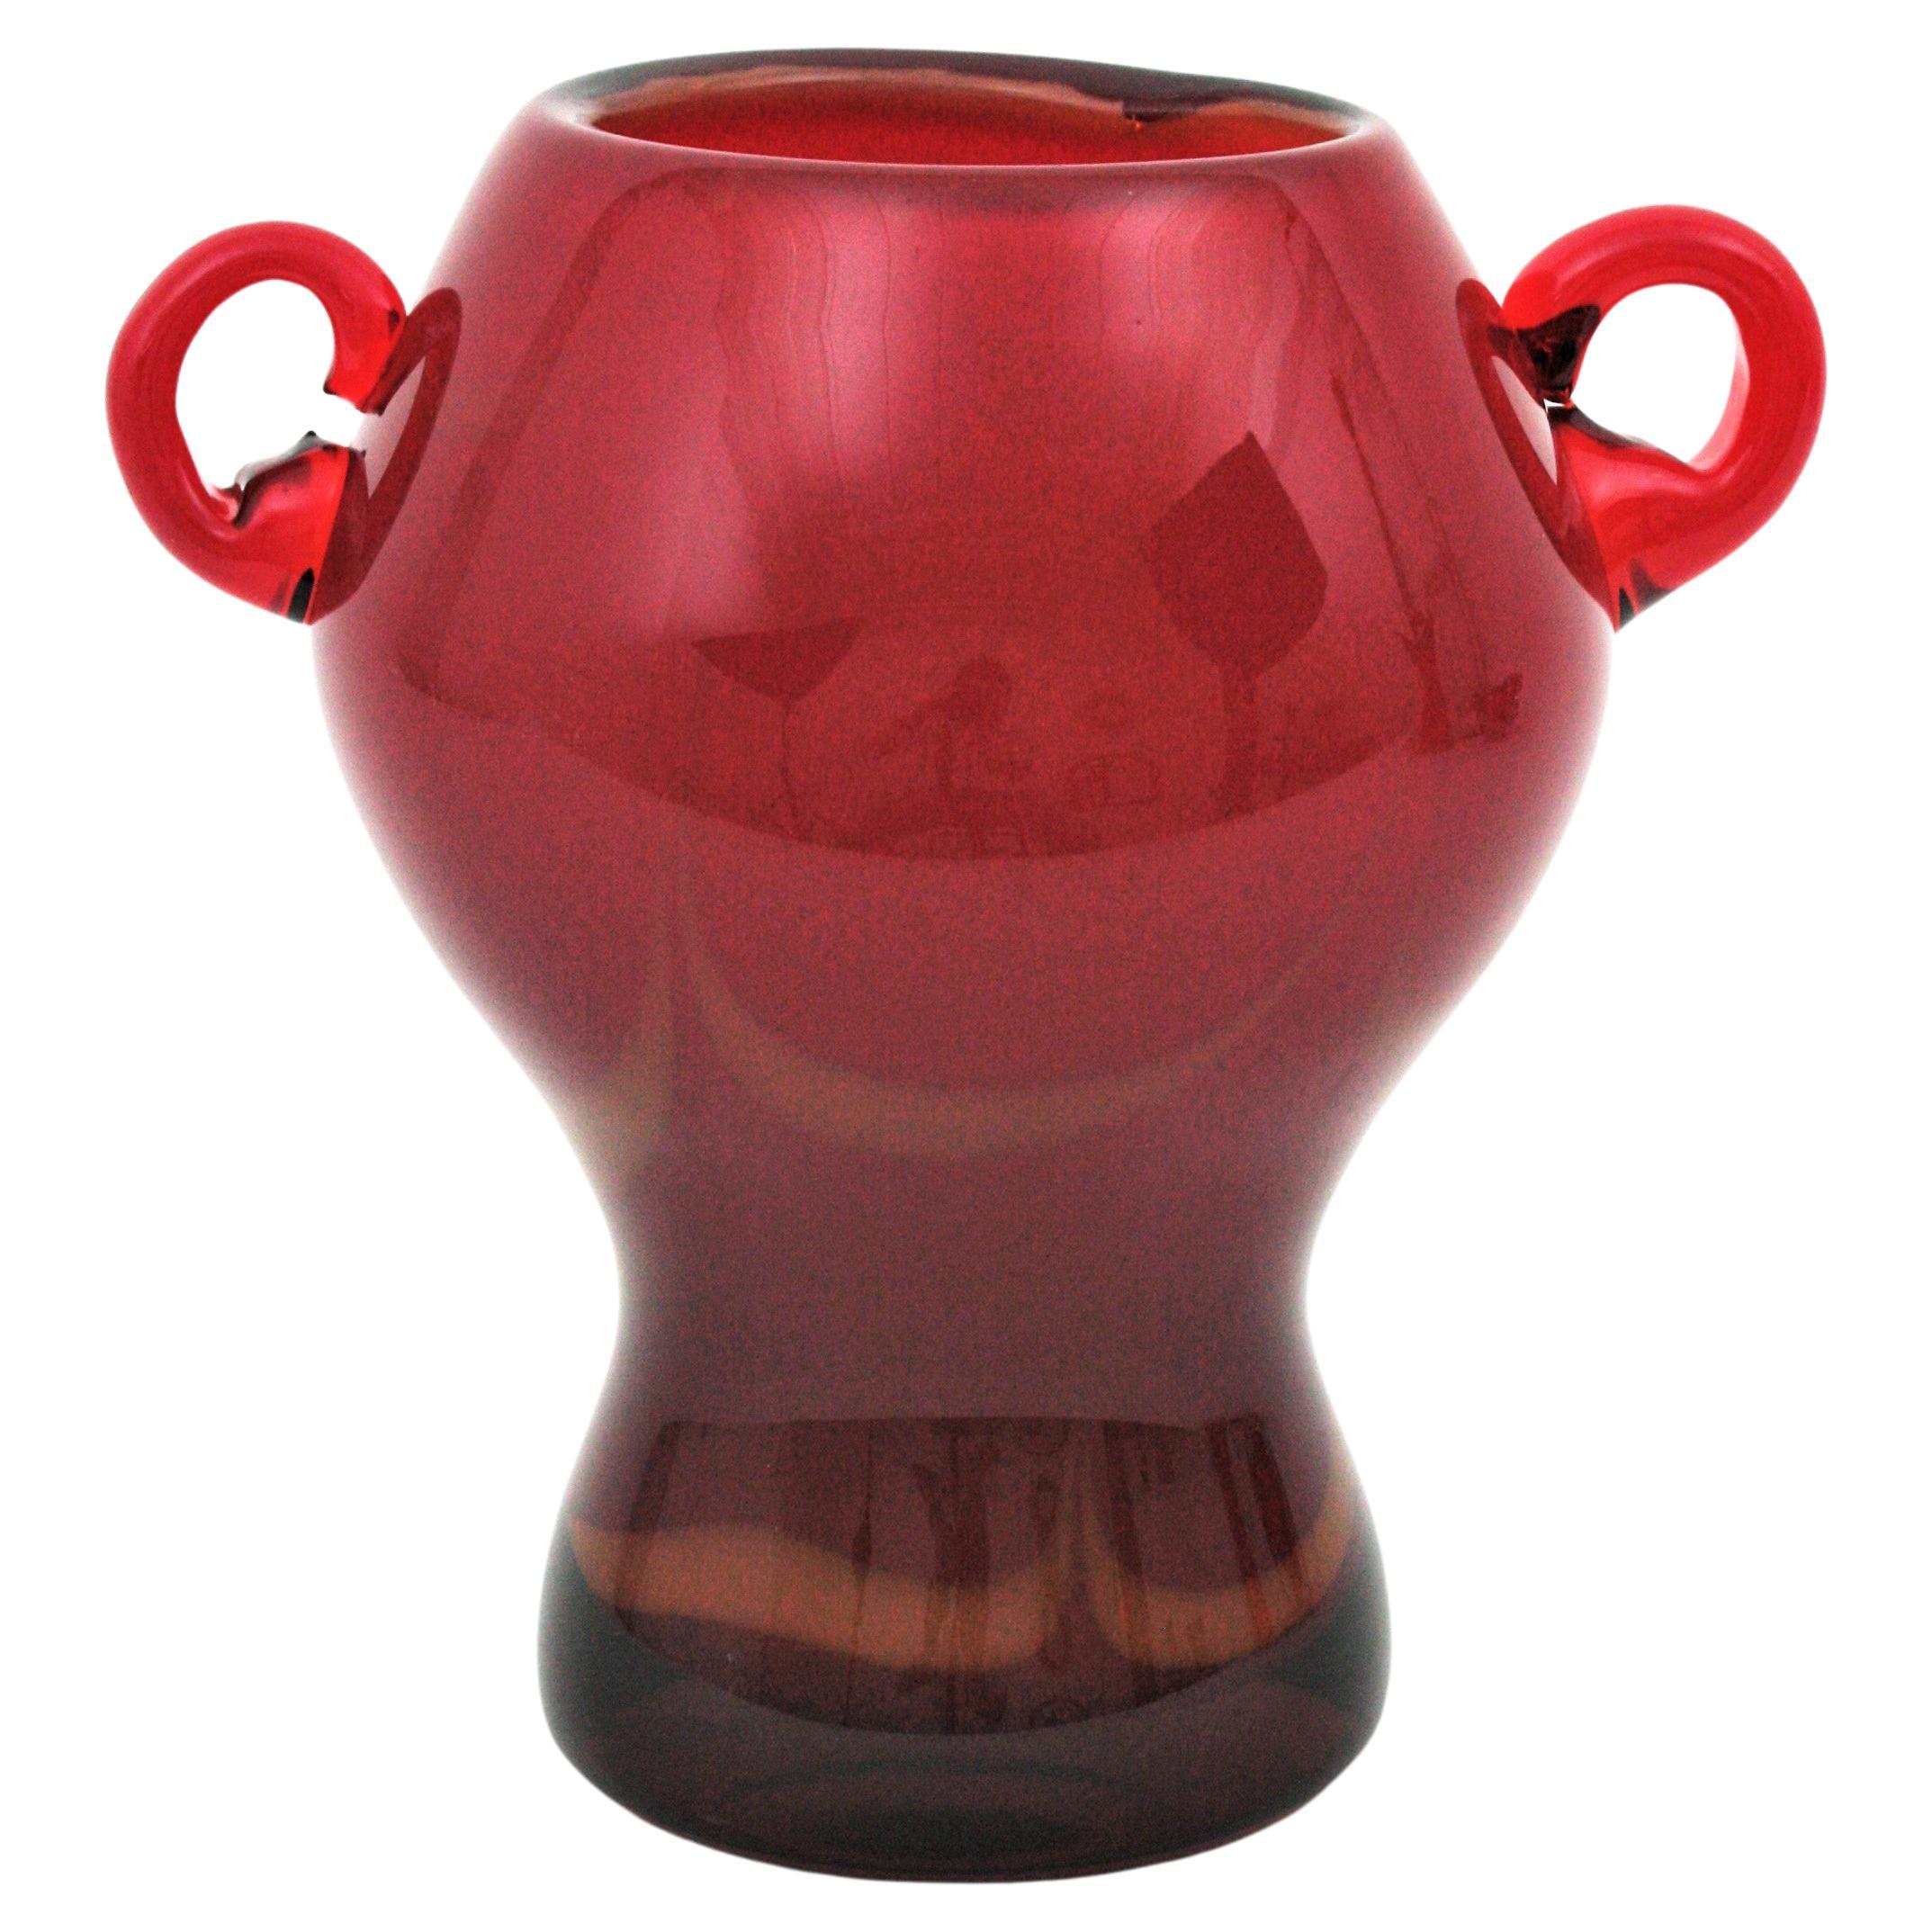 Vase rouge en verre de Murano soufflé à la main avec des poignées appliquées. Attribué à Archimede Seguso et Seguso Vetri d'Arte, Italie, années 1950.
Ce vase en forme de jarre en verre de Murano est fait de verre rouge et est rehaussé d'accents